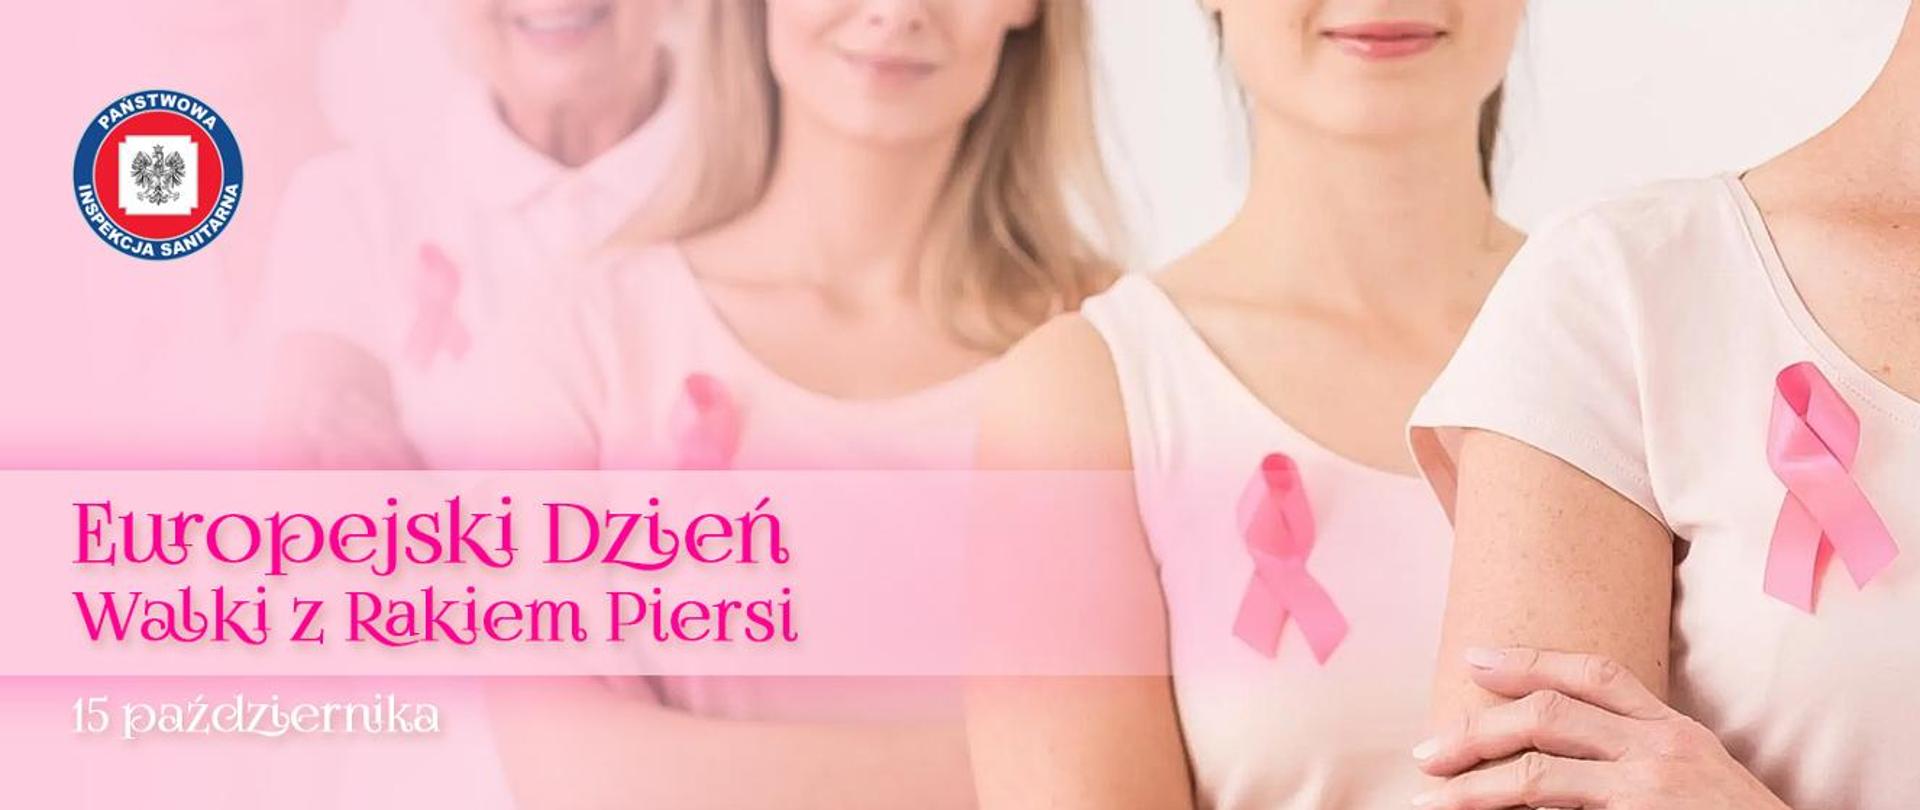 Europejski dzień walki z rakiem piersi